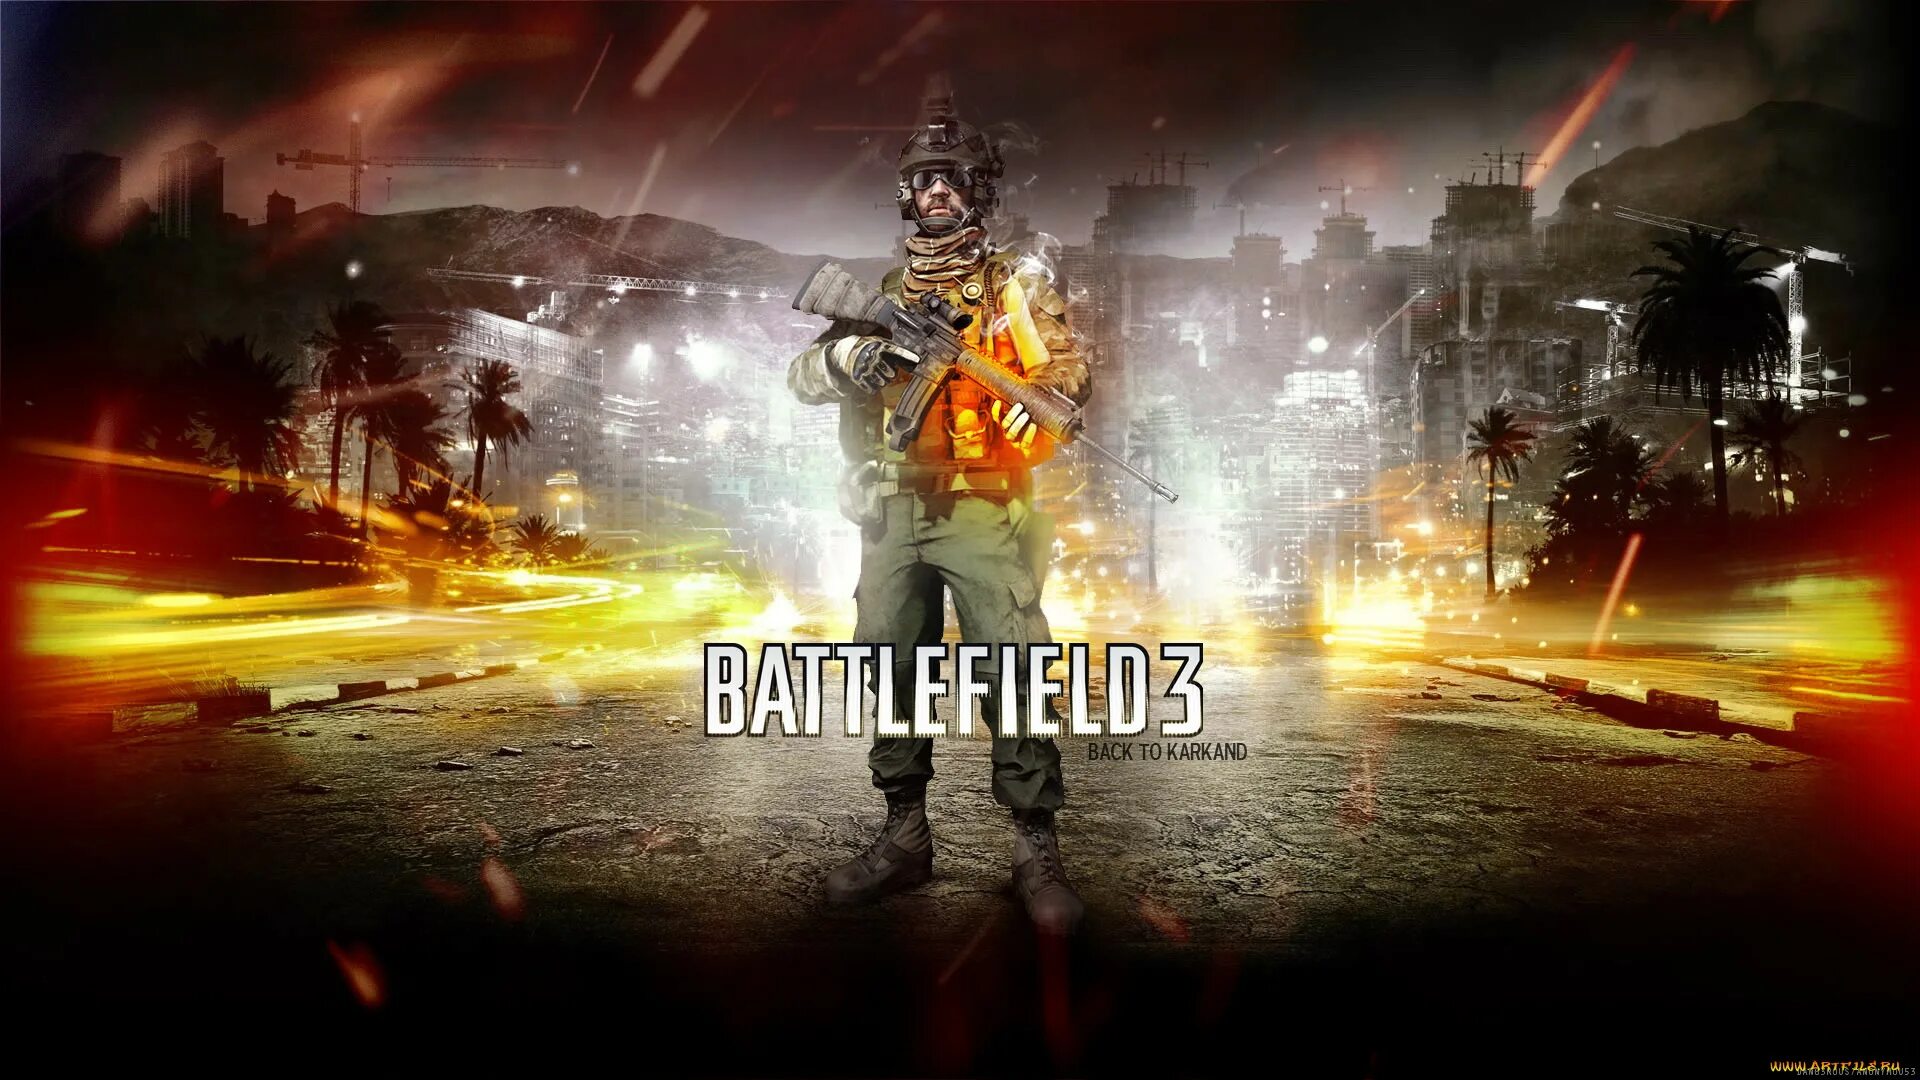 Бателфилд 3. Battlefield 3 – back to Karkand. Бф3 2011. Картинки бателфилд. Ли battlefield 3